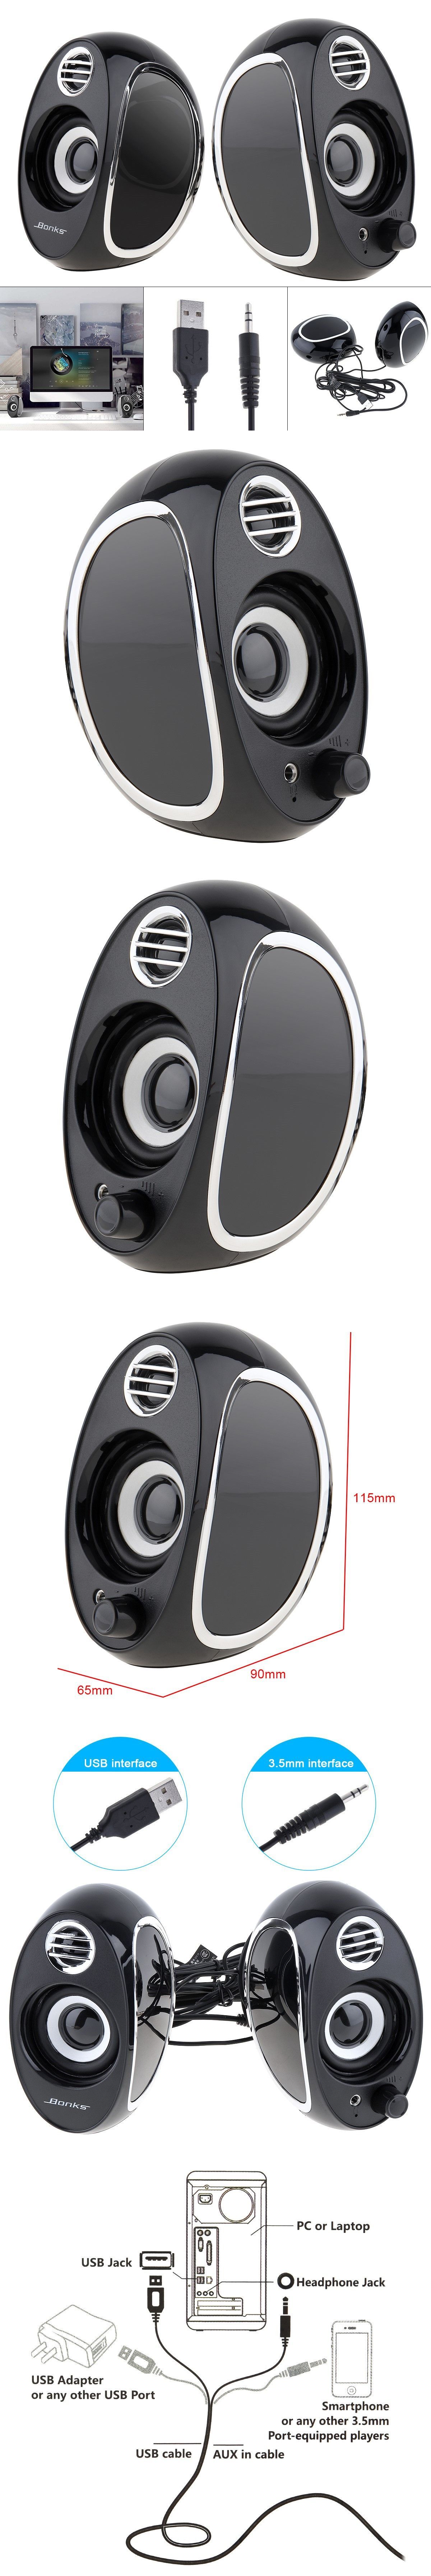 Bonks-DX18-Full-Range-20-Subwoofer-Portable-Computer-Speakers-Mini-Bass-PC-Speaker-Portable-Music-DJ-1632258